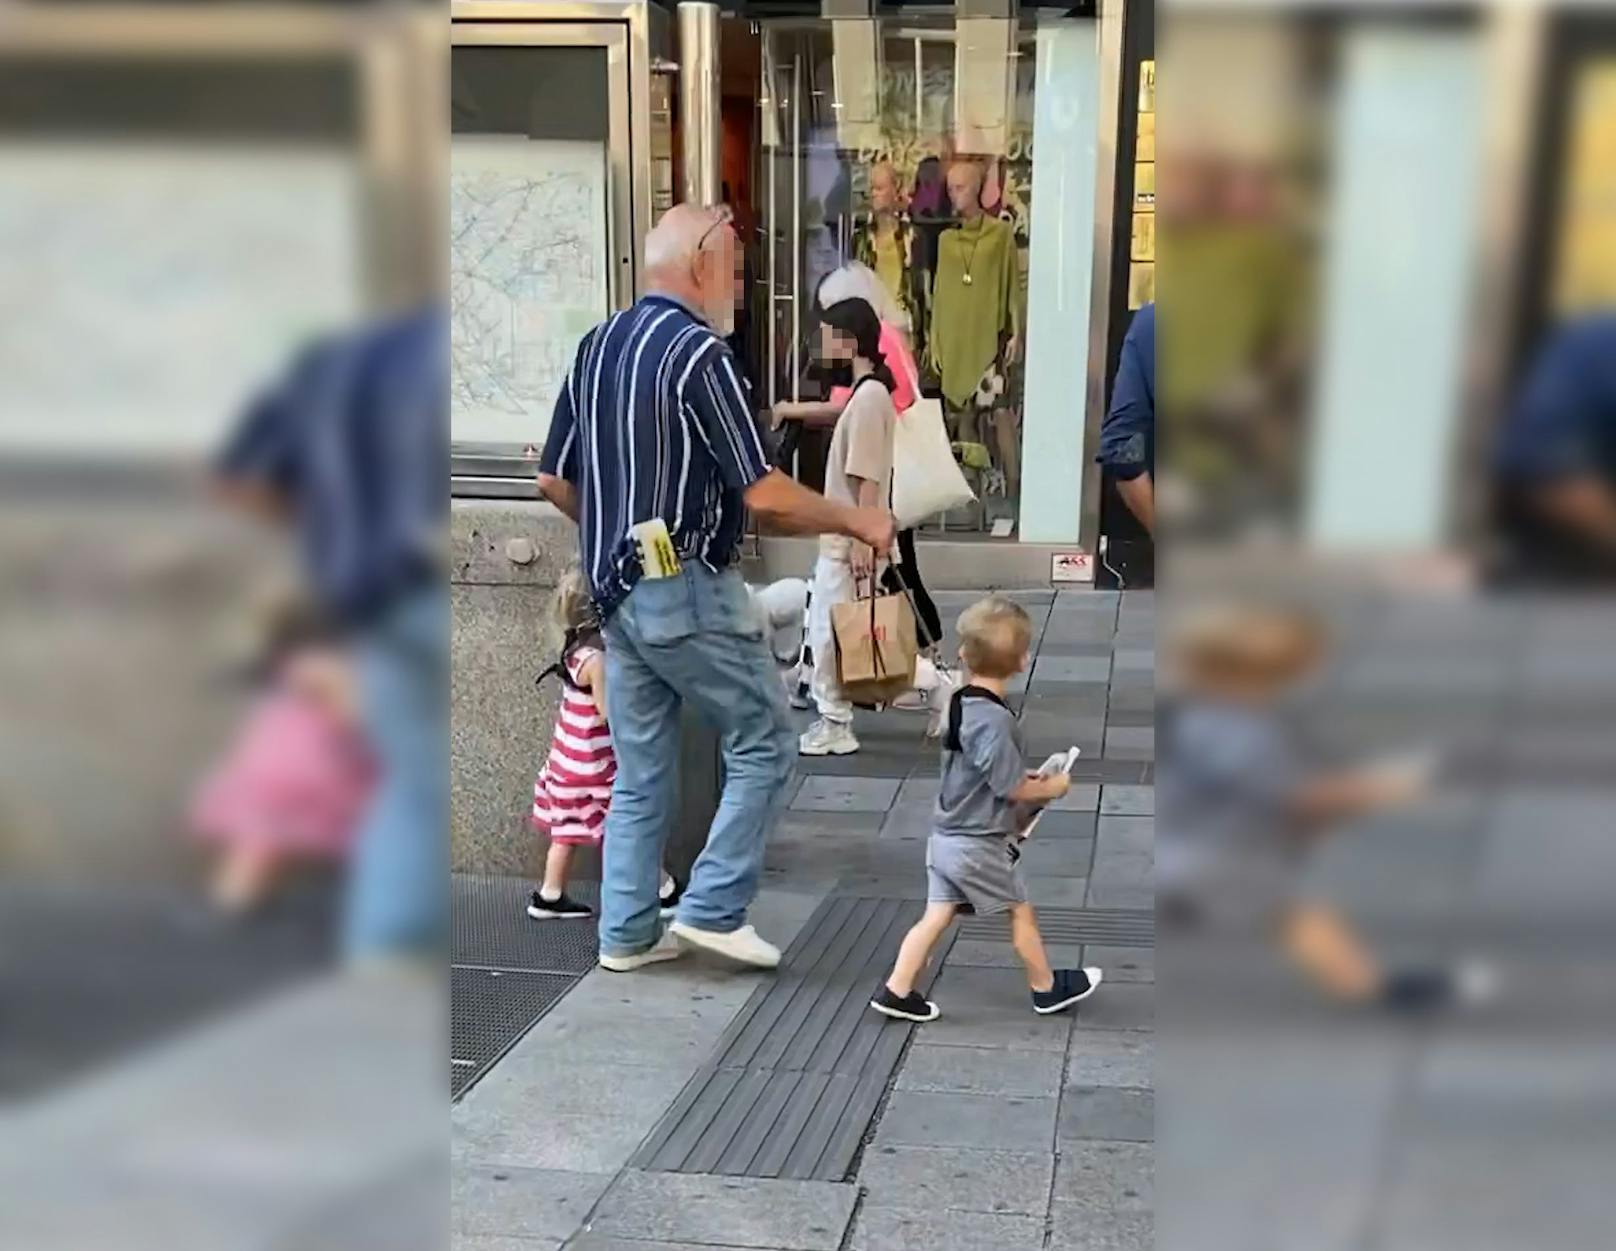 In Wien war ein Mann mit seinen Enkelkindern an der Leine unterwegs.